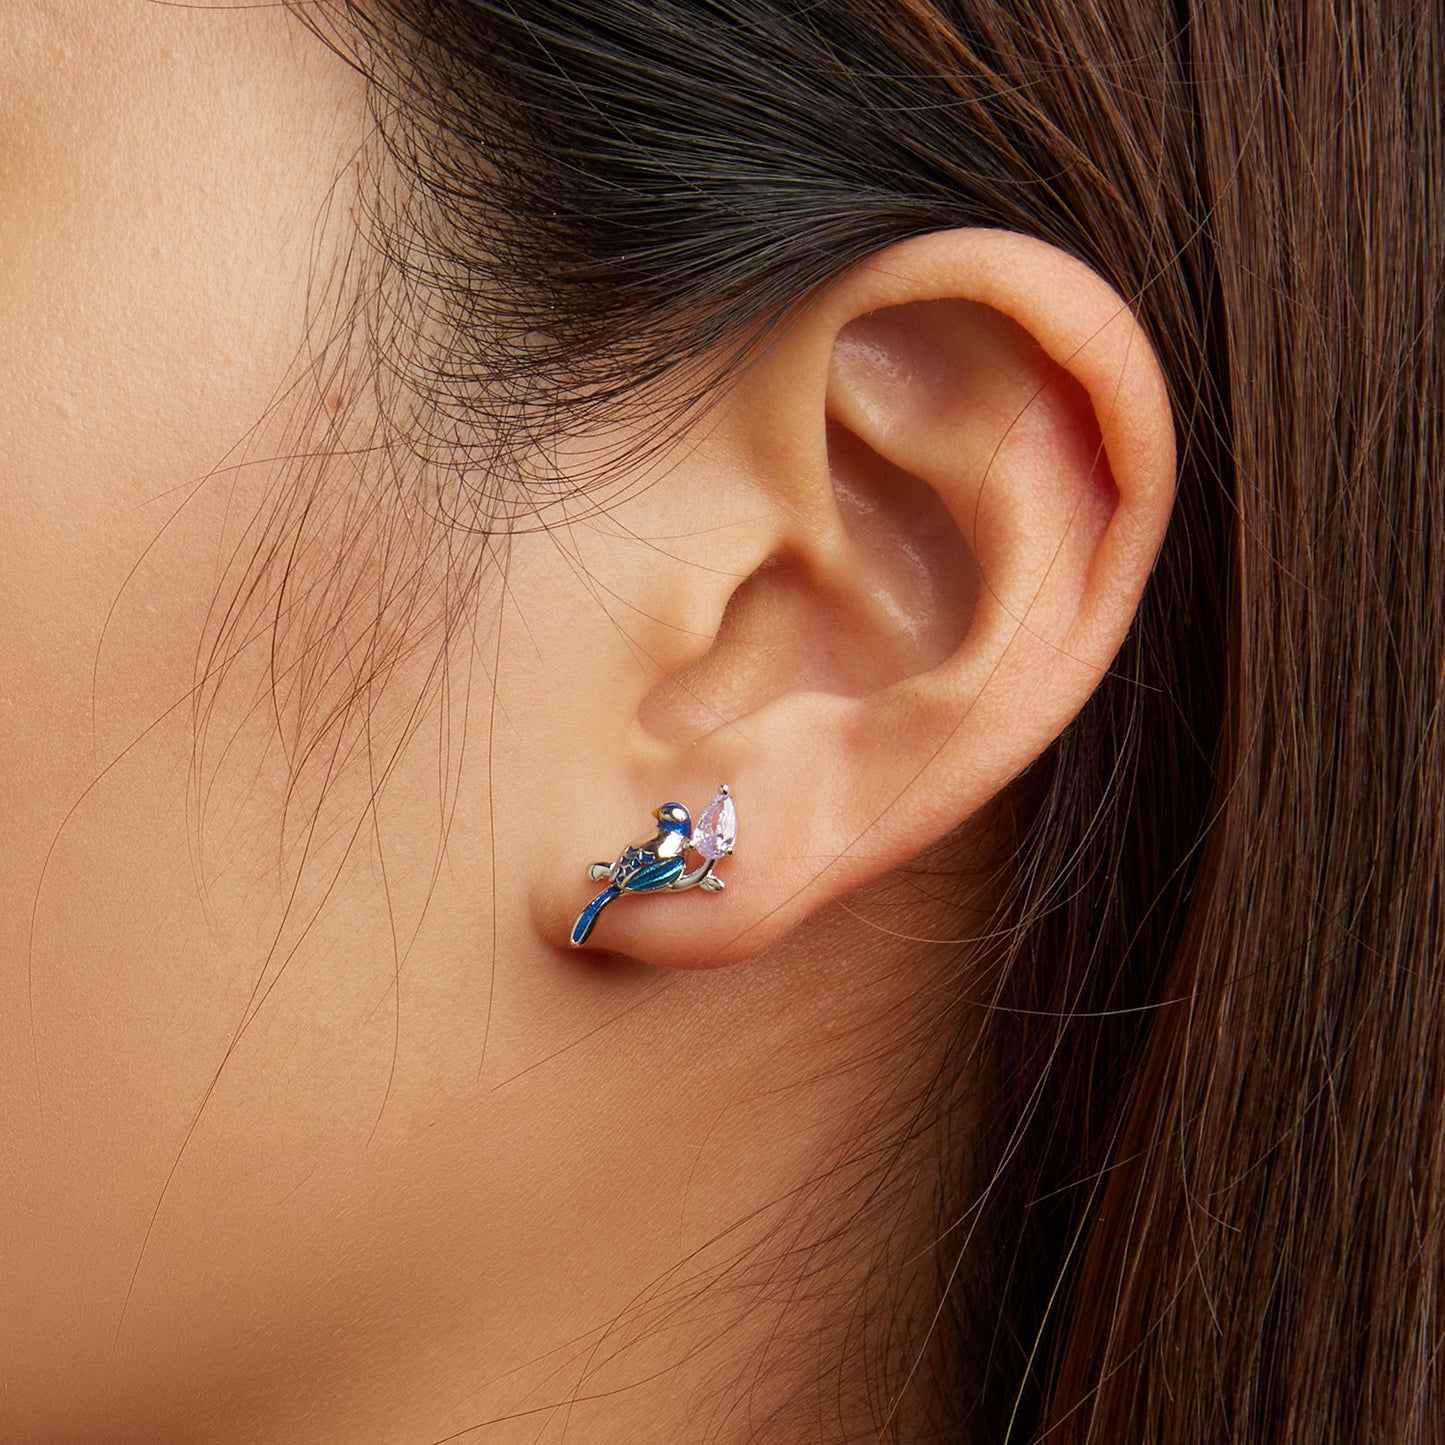 Bird earrings,  92.5% Sterling Silver,  Zircon ear stud